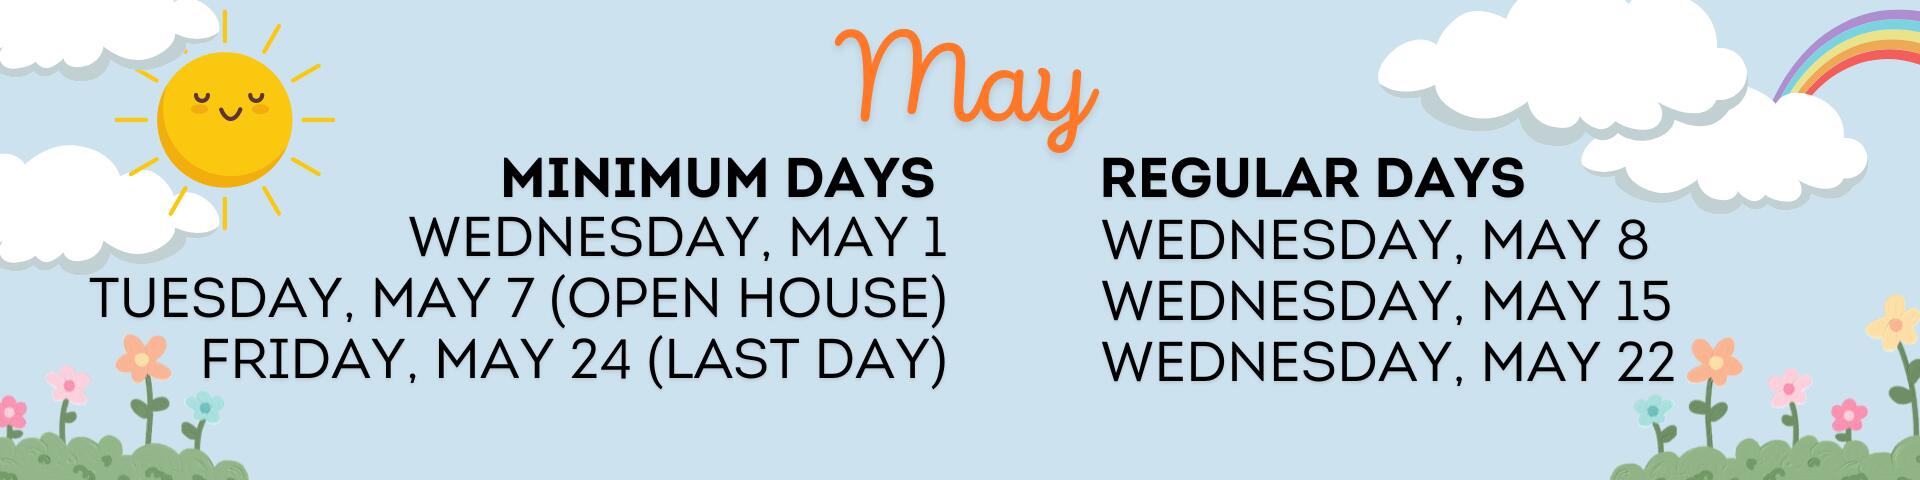 may dates, minimum days may 1, may 7, may 24, regular days may 8, may 15, may 22